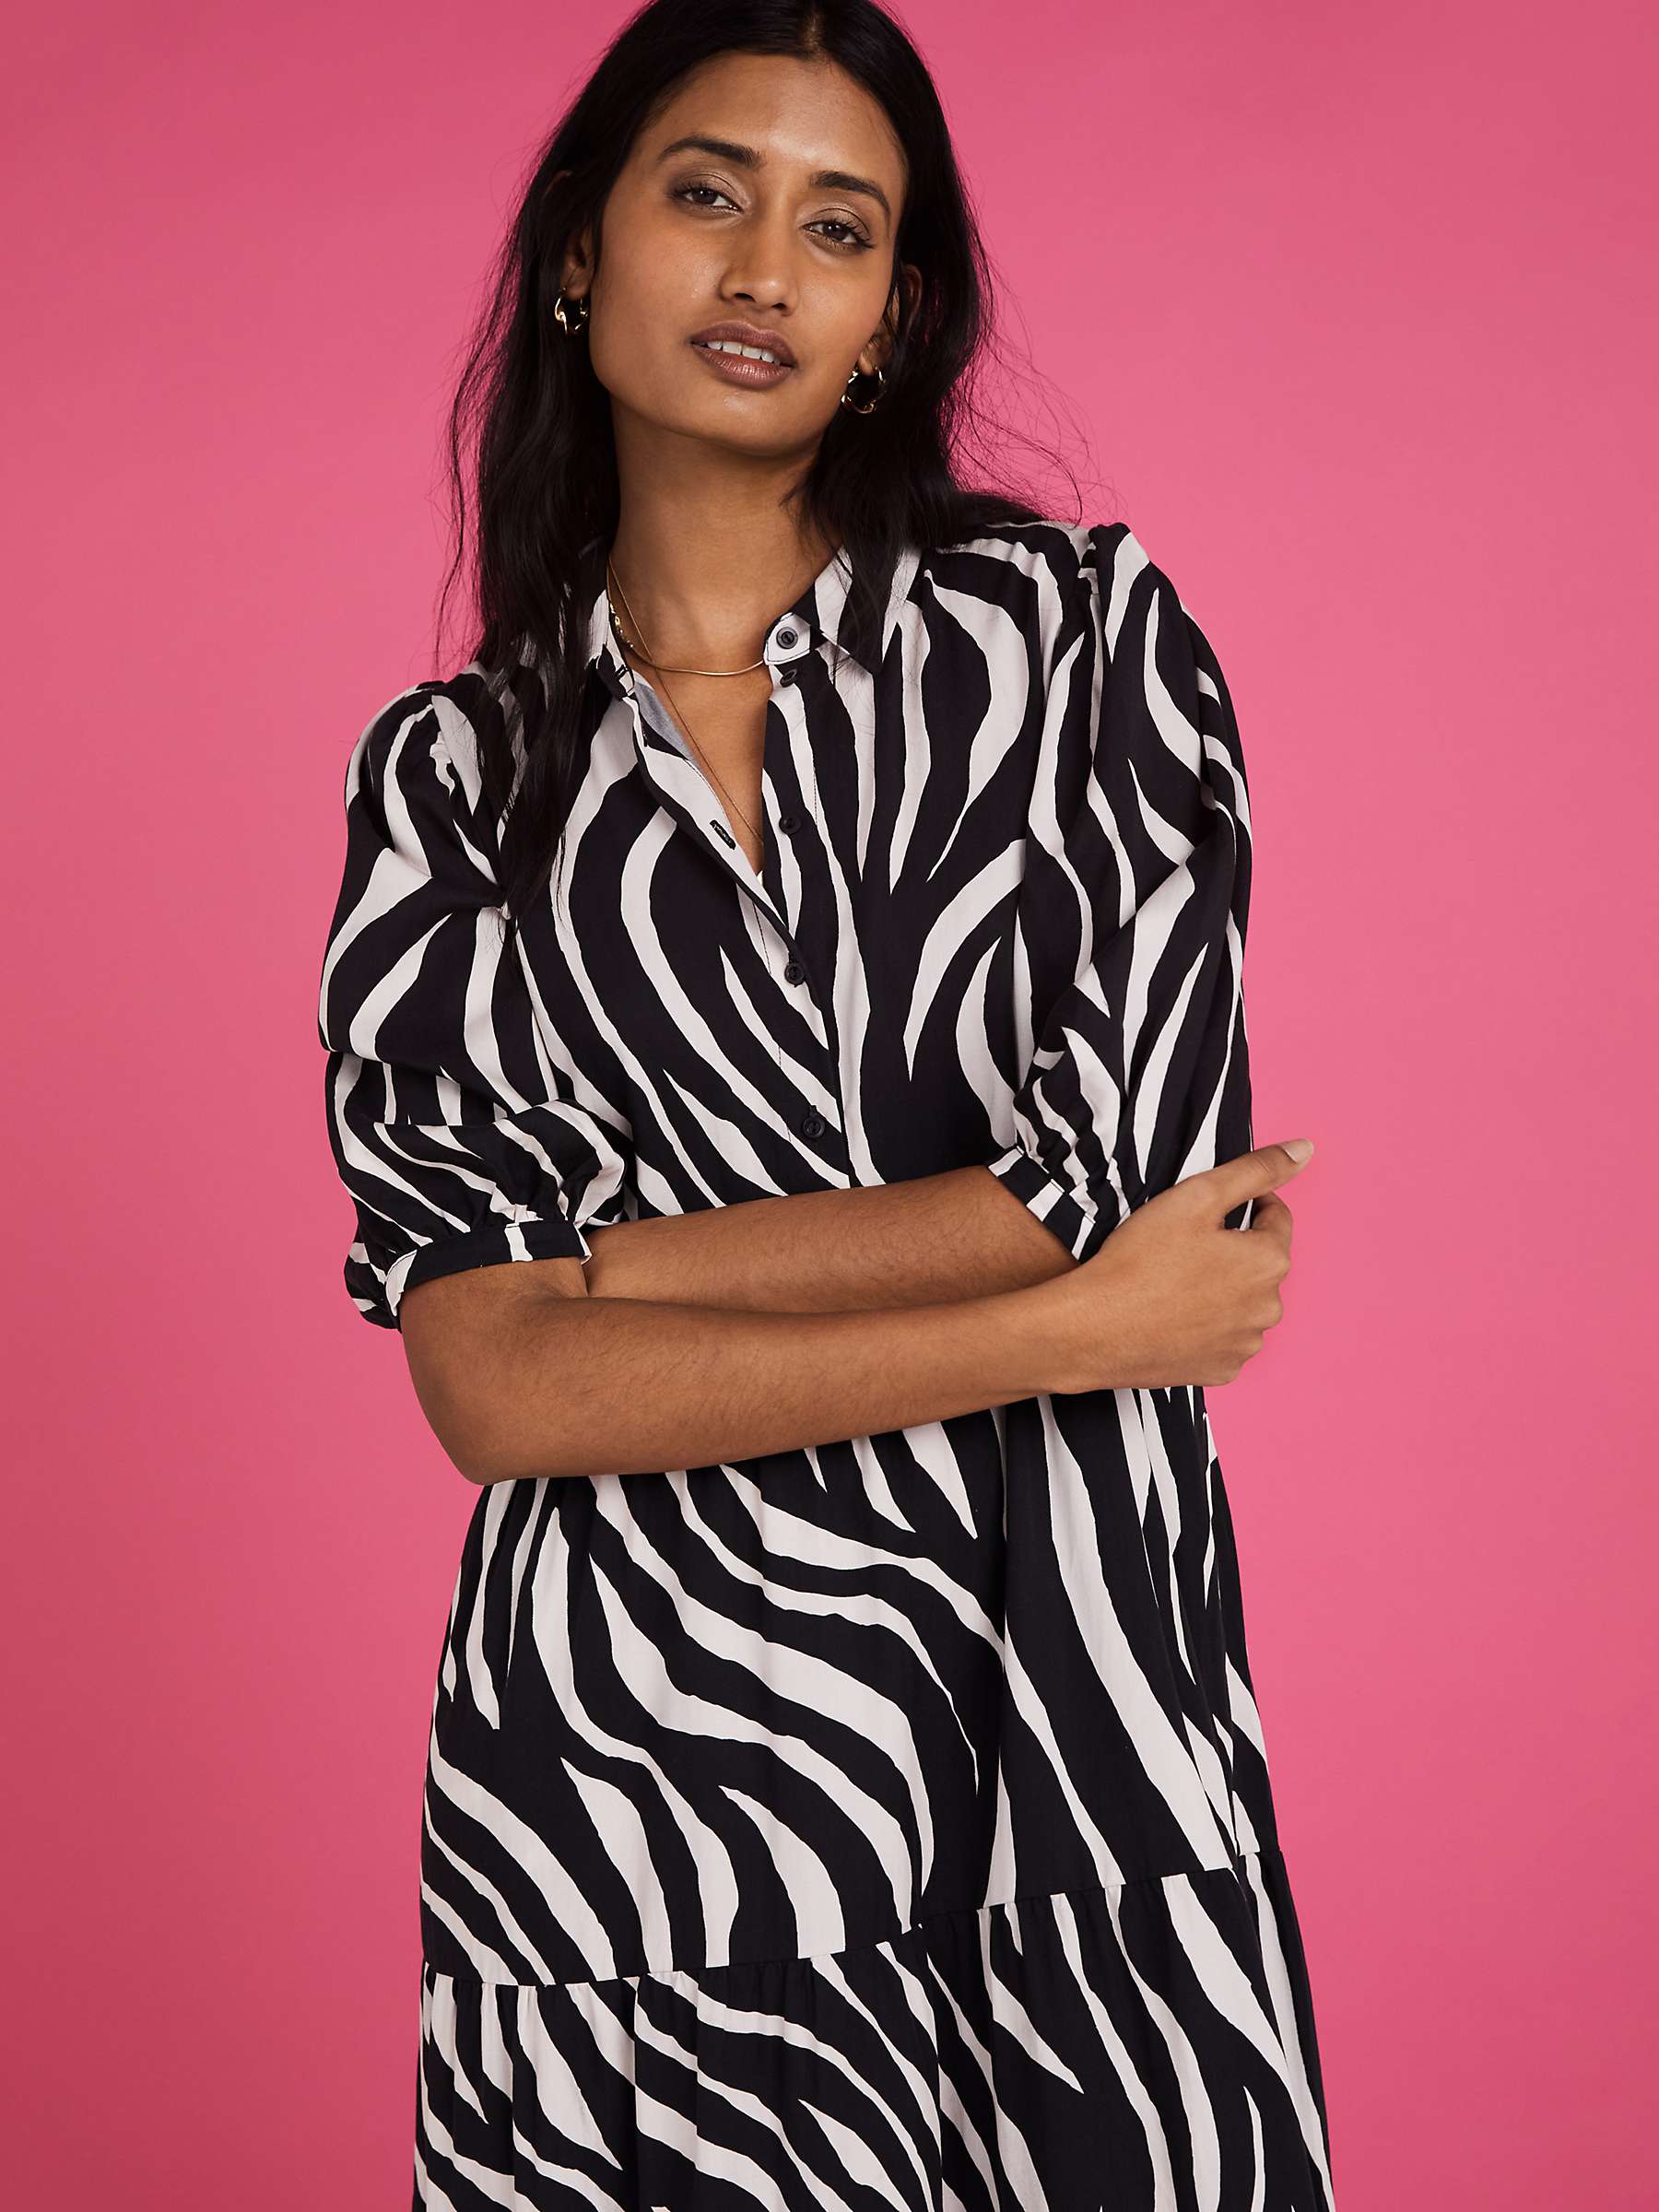 Buy Baukjen Zebra Print Midi Shirt Dress, Black/White Online at johnlewis.com